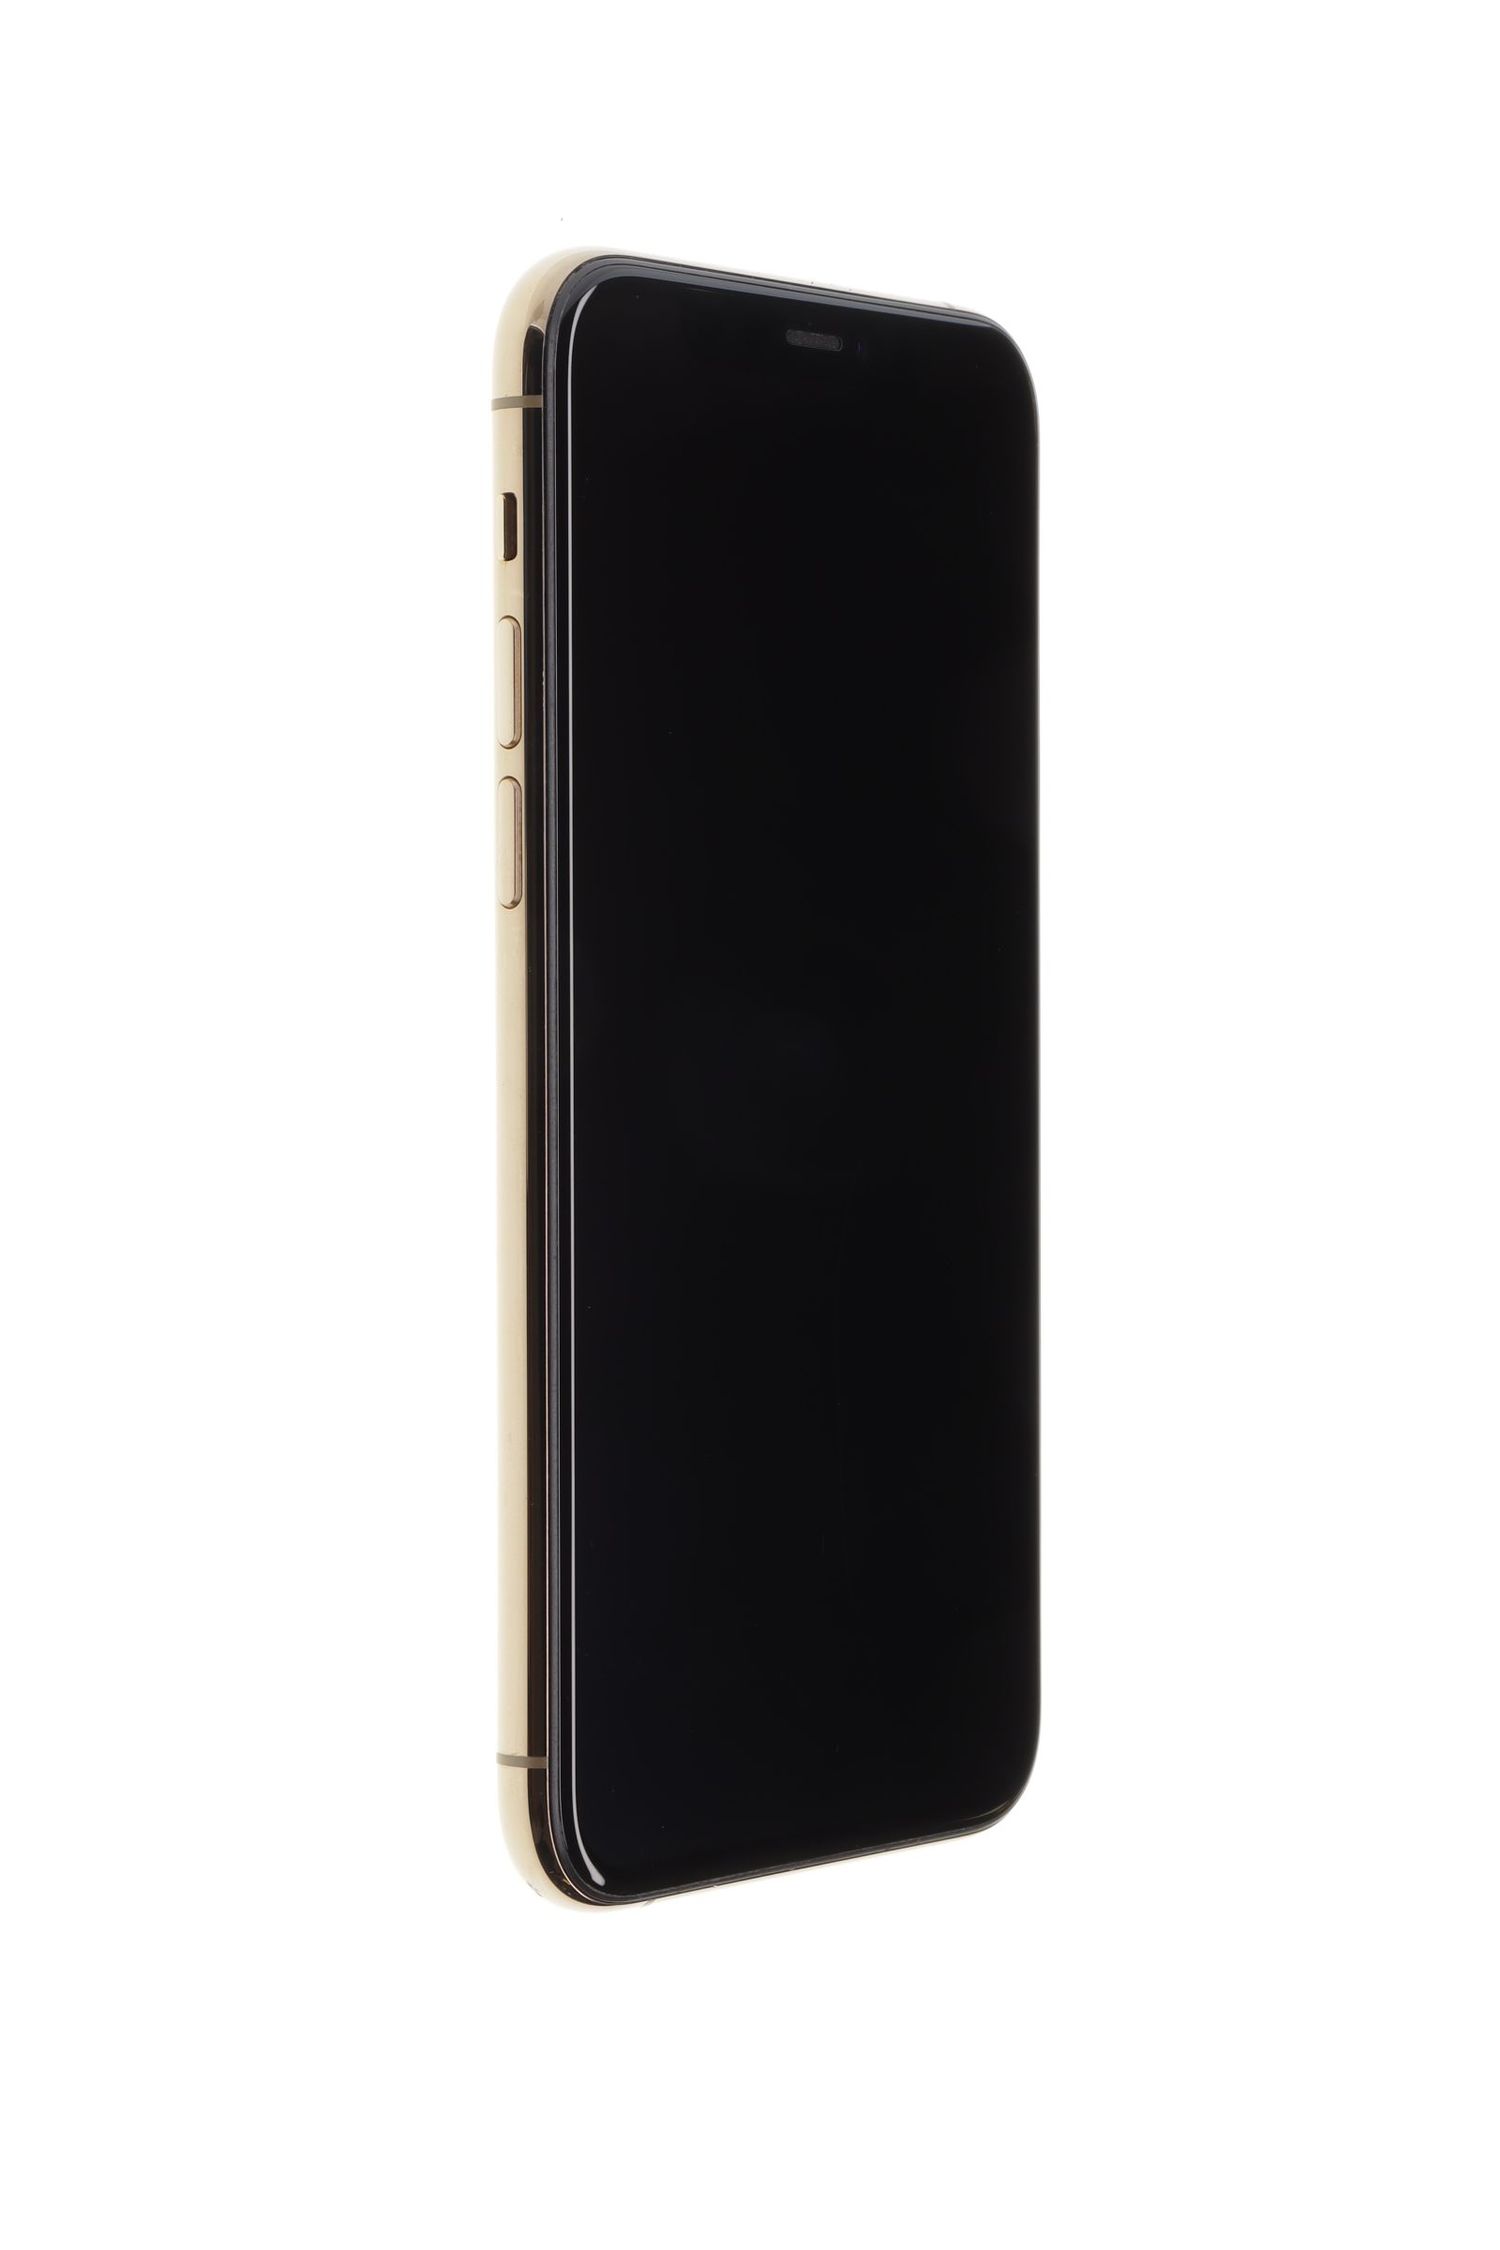 Κινητό τηλέφωνο Apple iPhone 11 Pro, Gold, 64 GB, Ca Nou